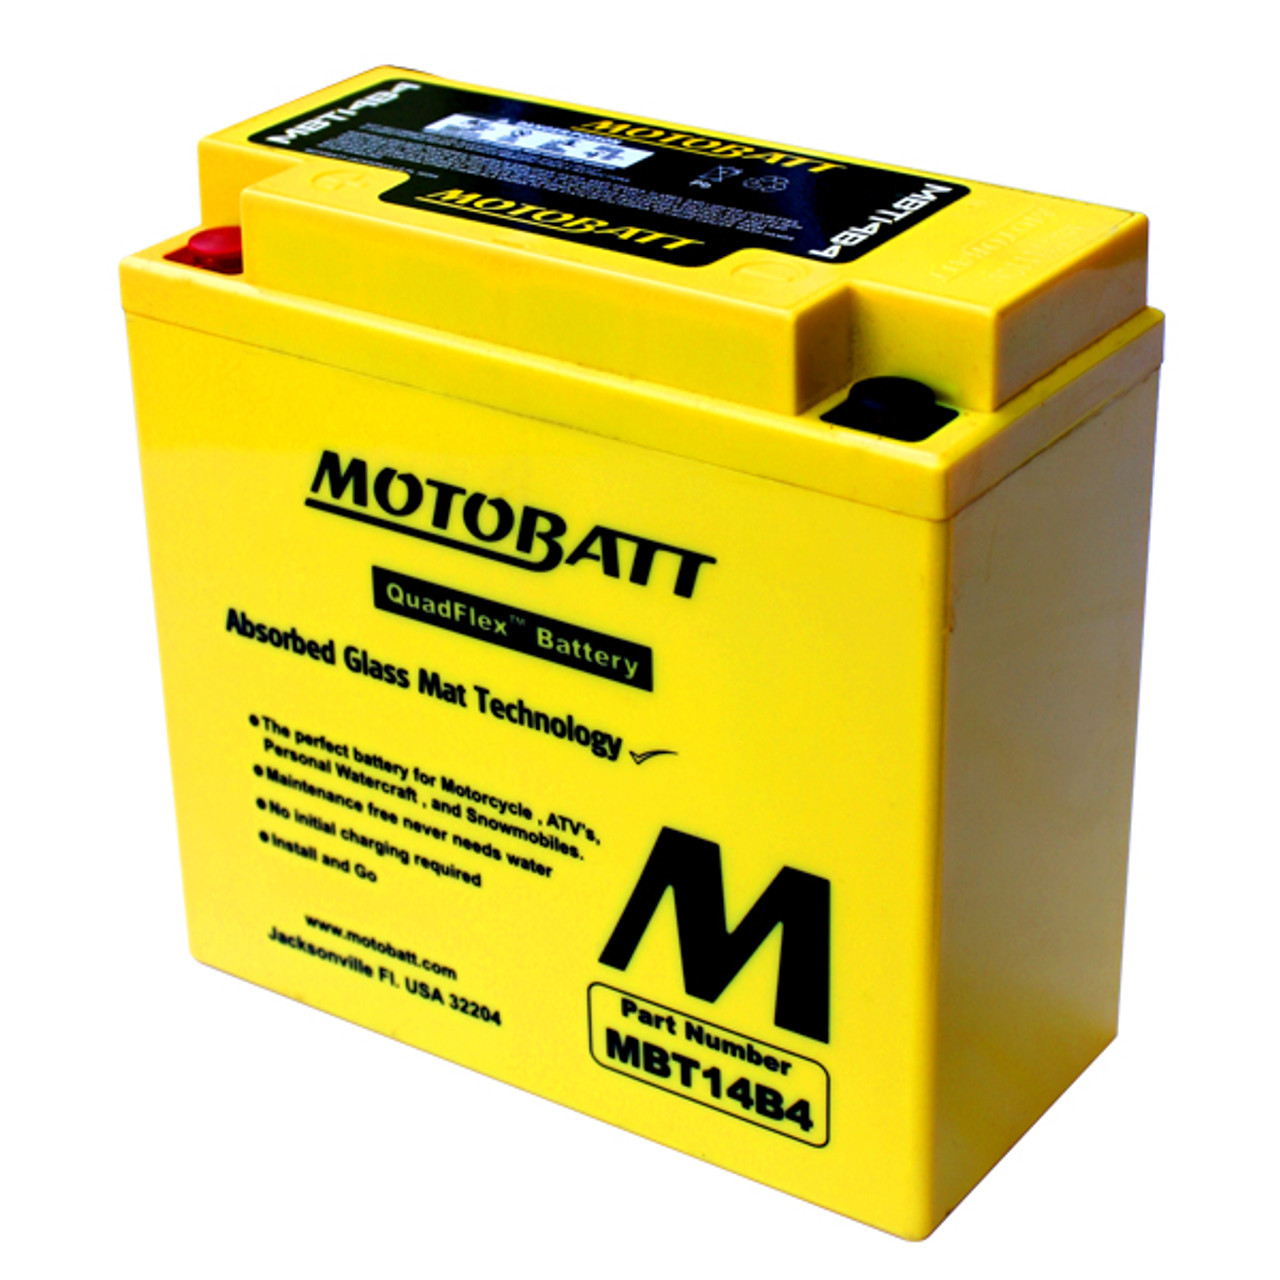 Motobatt MBT14B4 Battery - AGM Sealed for Motorcycle - Powersport